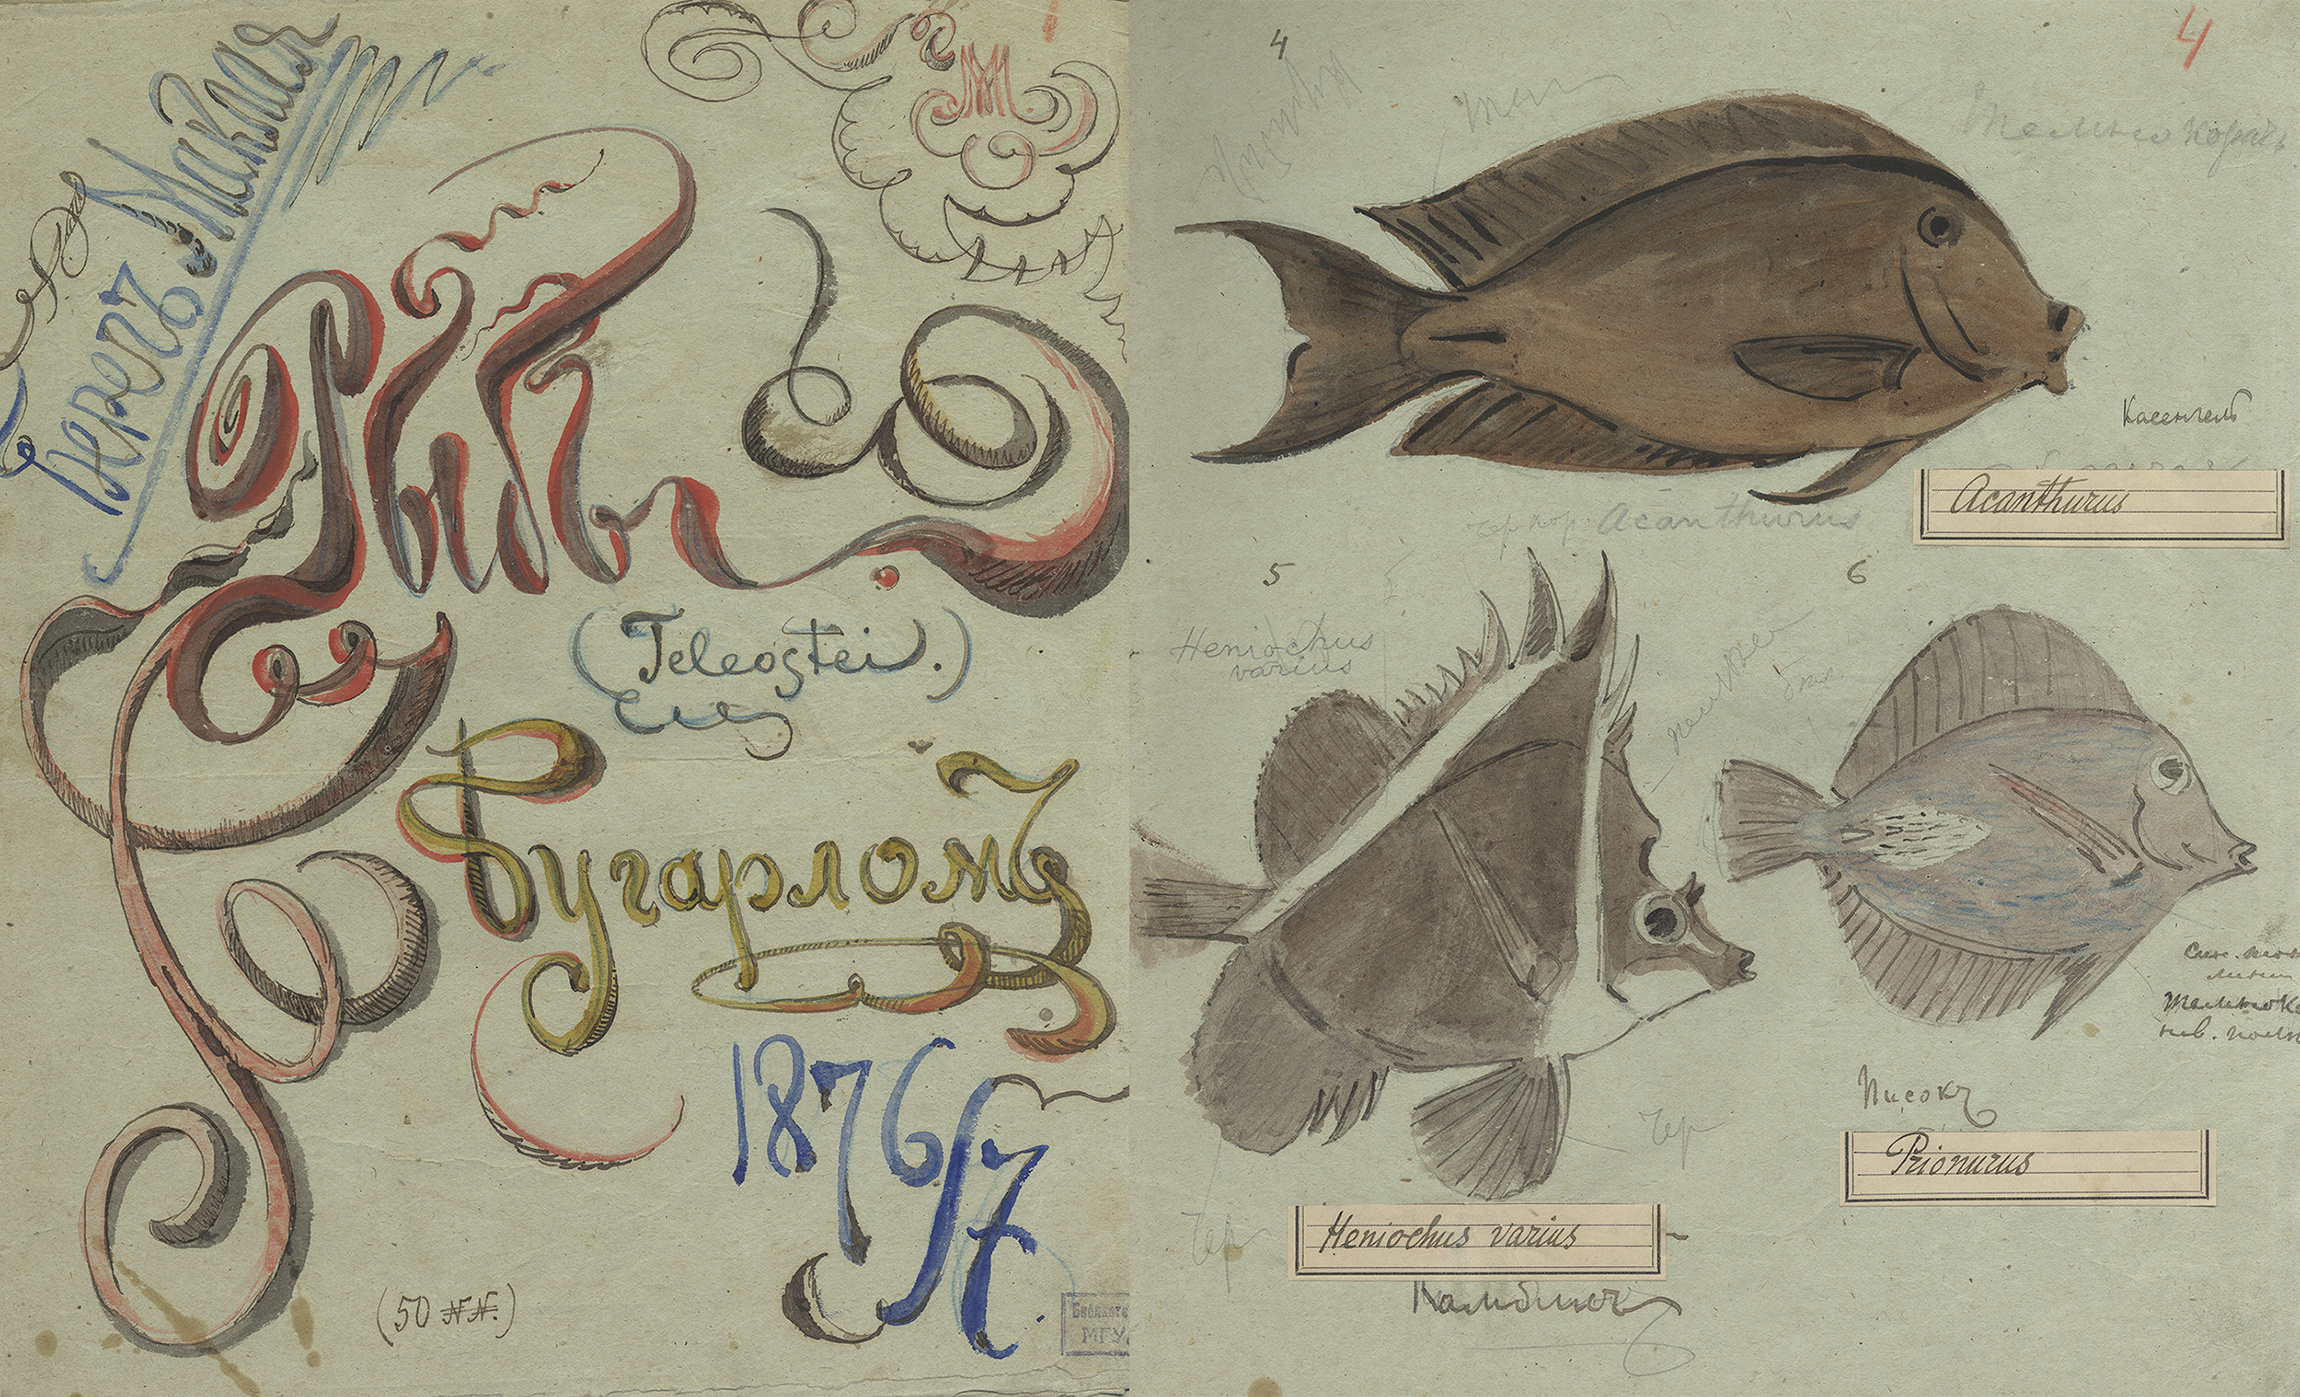 Альбом Н. Н. Миклухо-Маклая с рисунками рыб Мыс Бугарлом, Новая Гвинея. Научный архив РГО